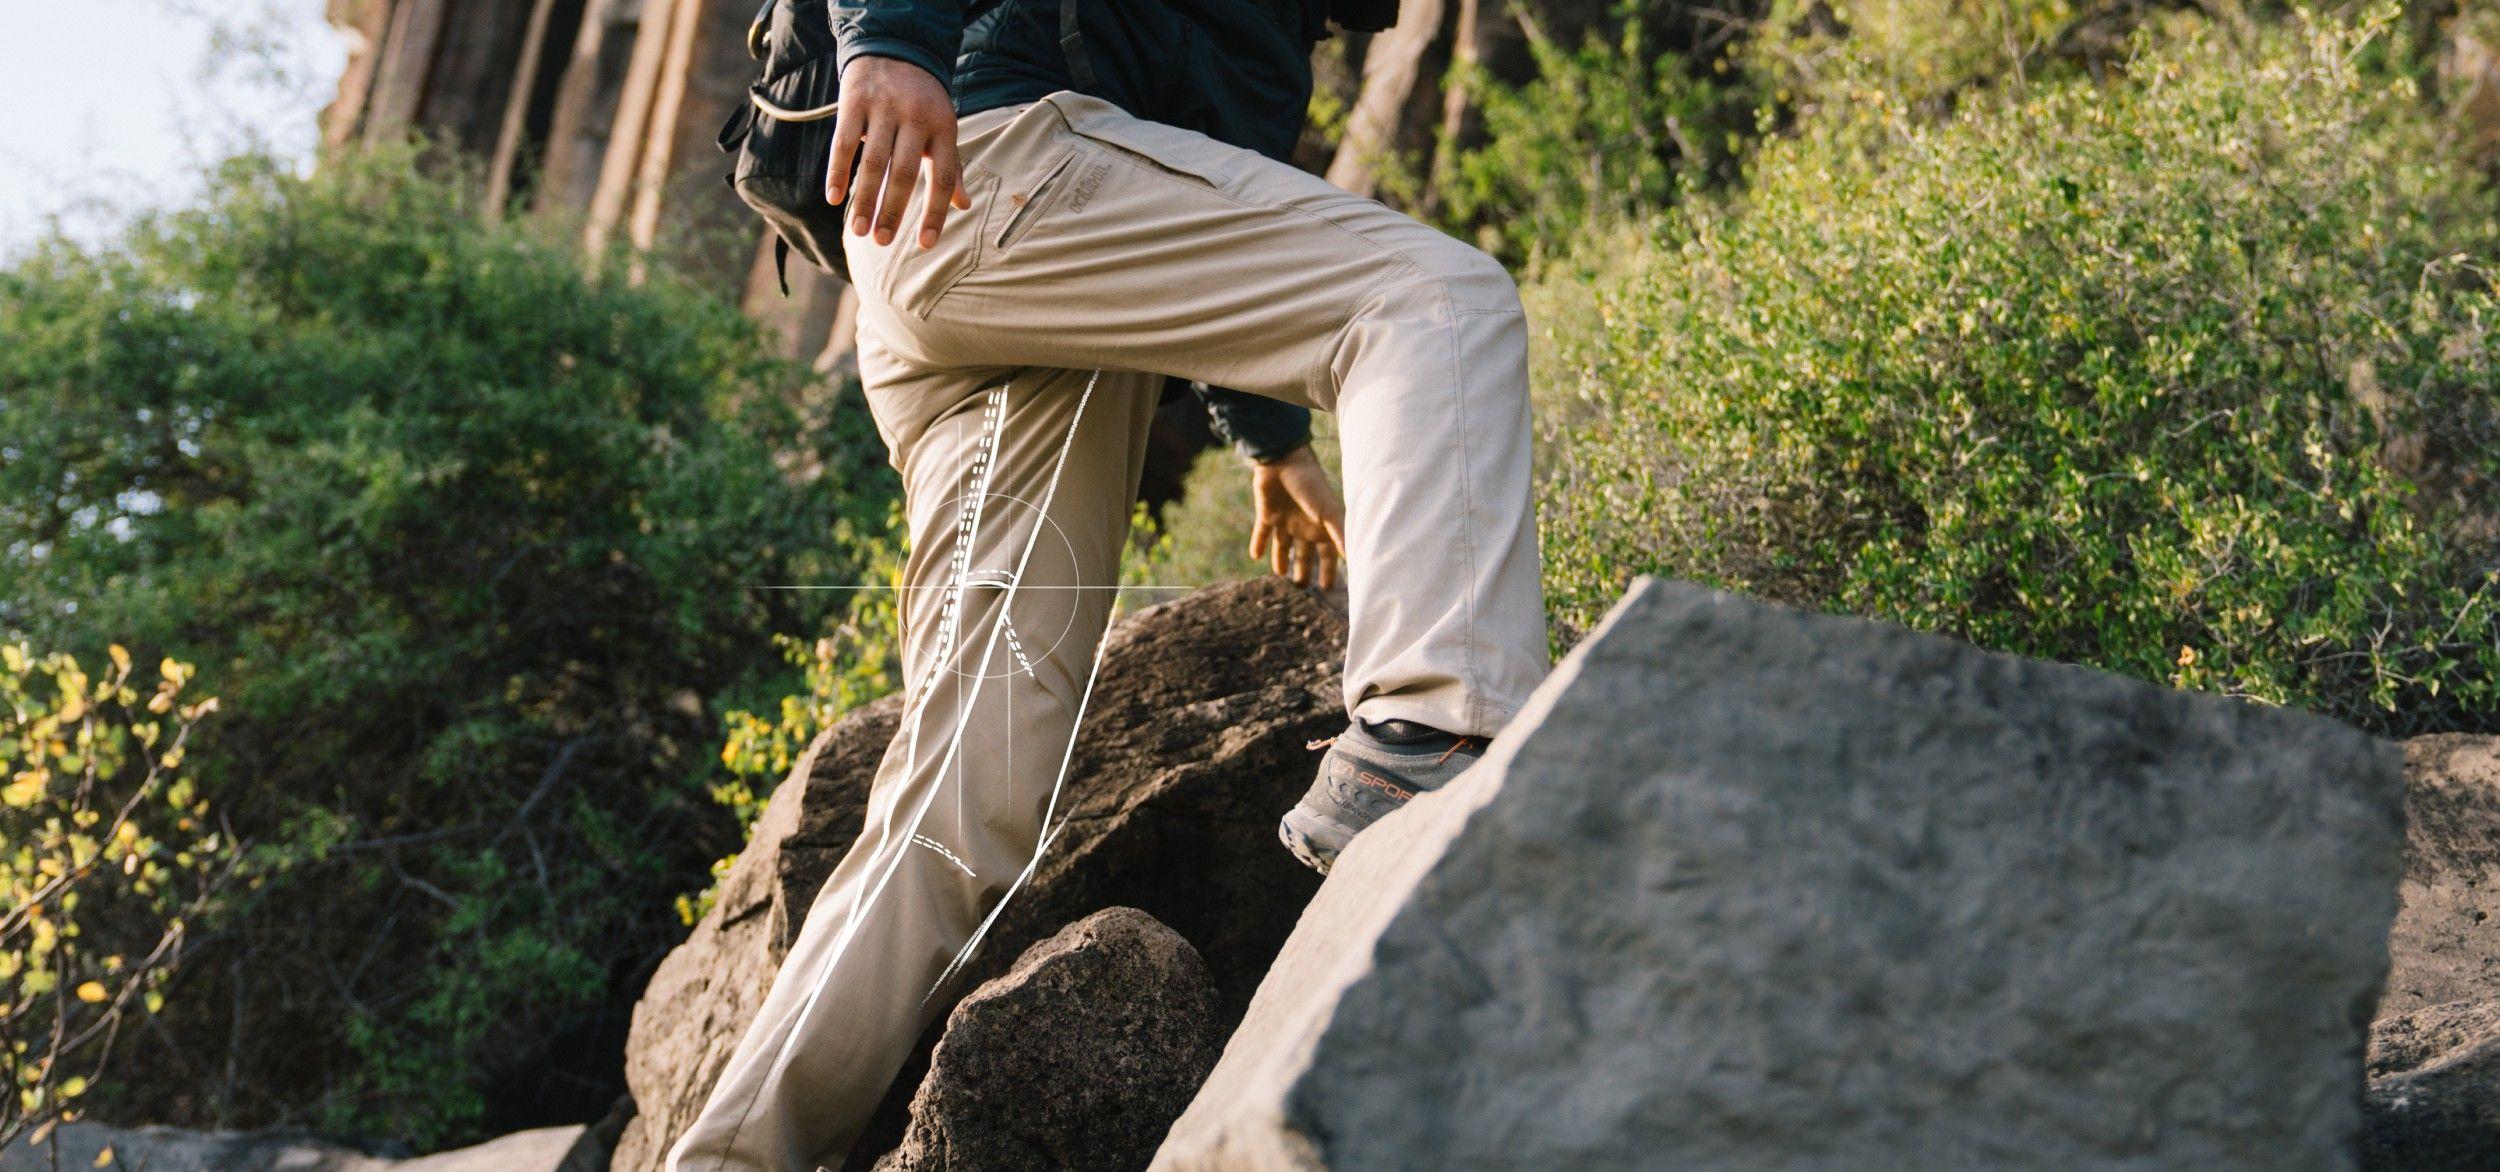 Man hiking in KUHL pants.